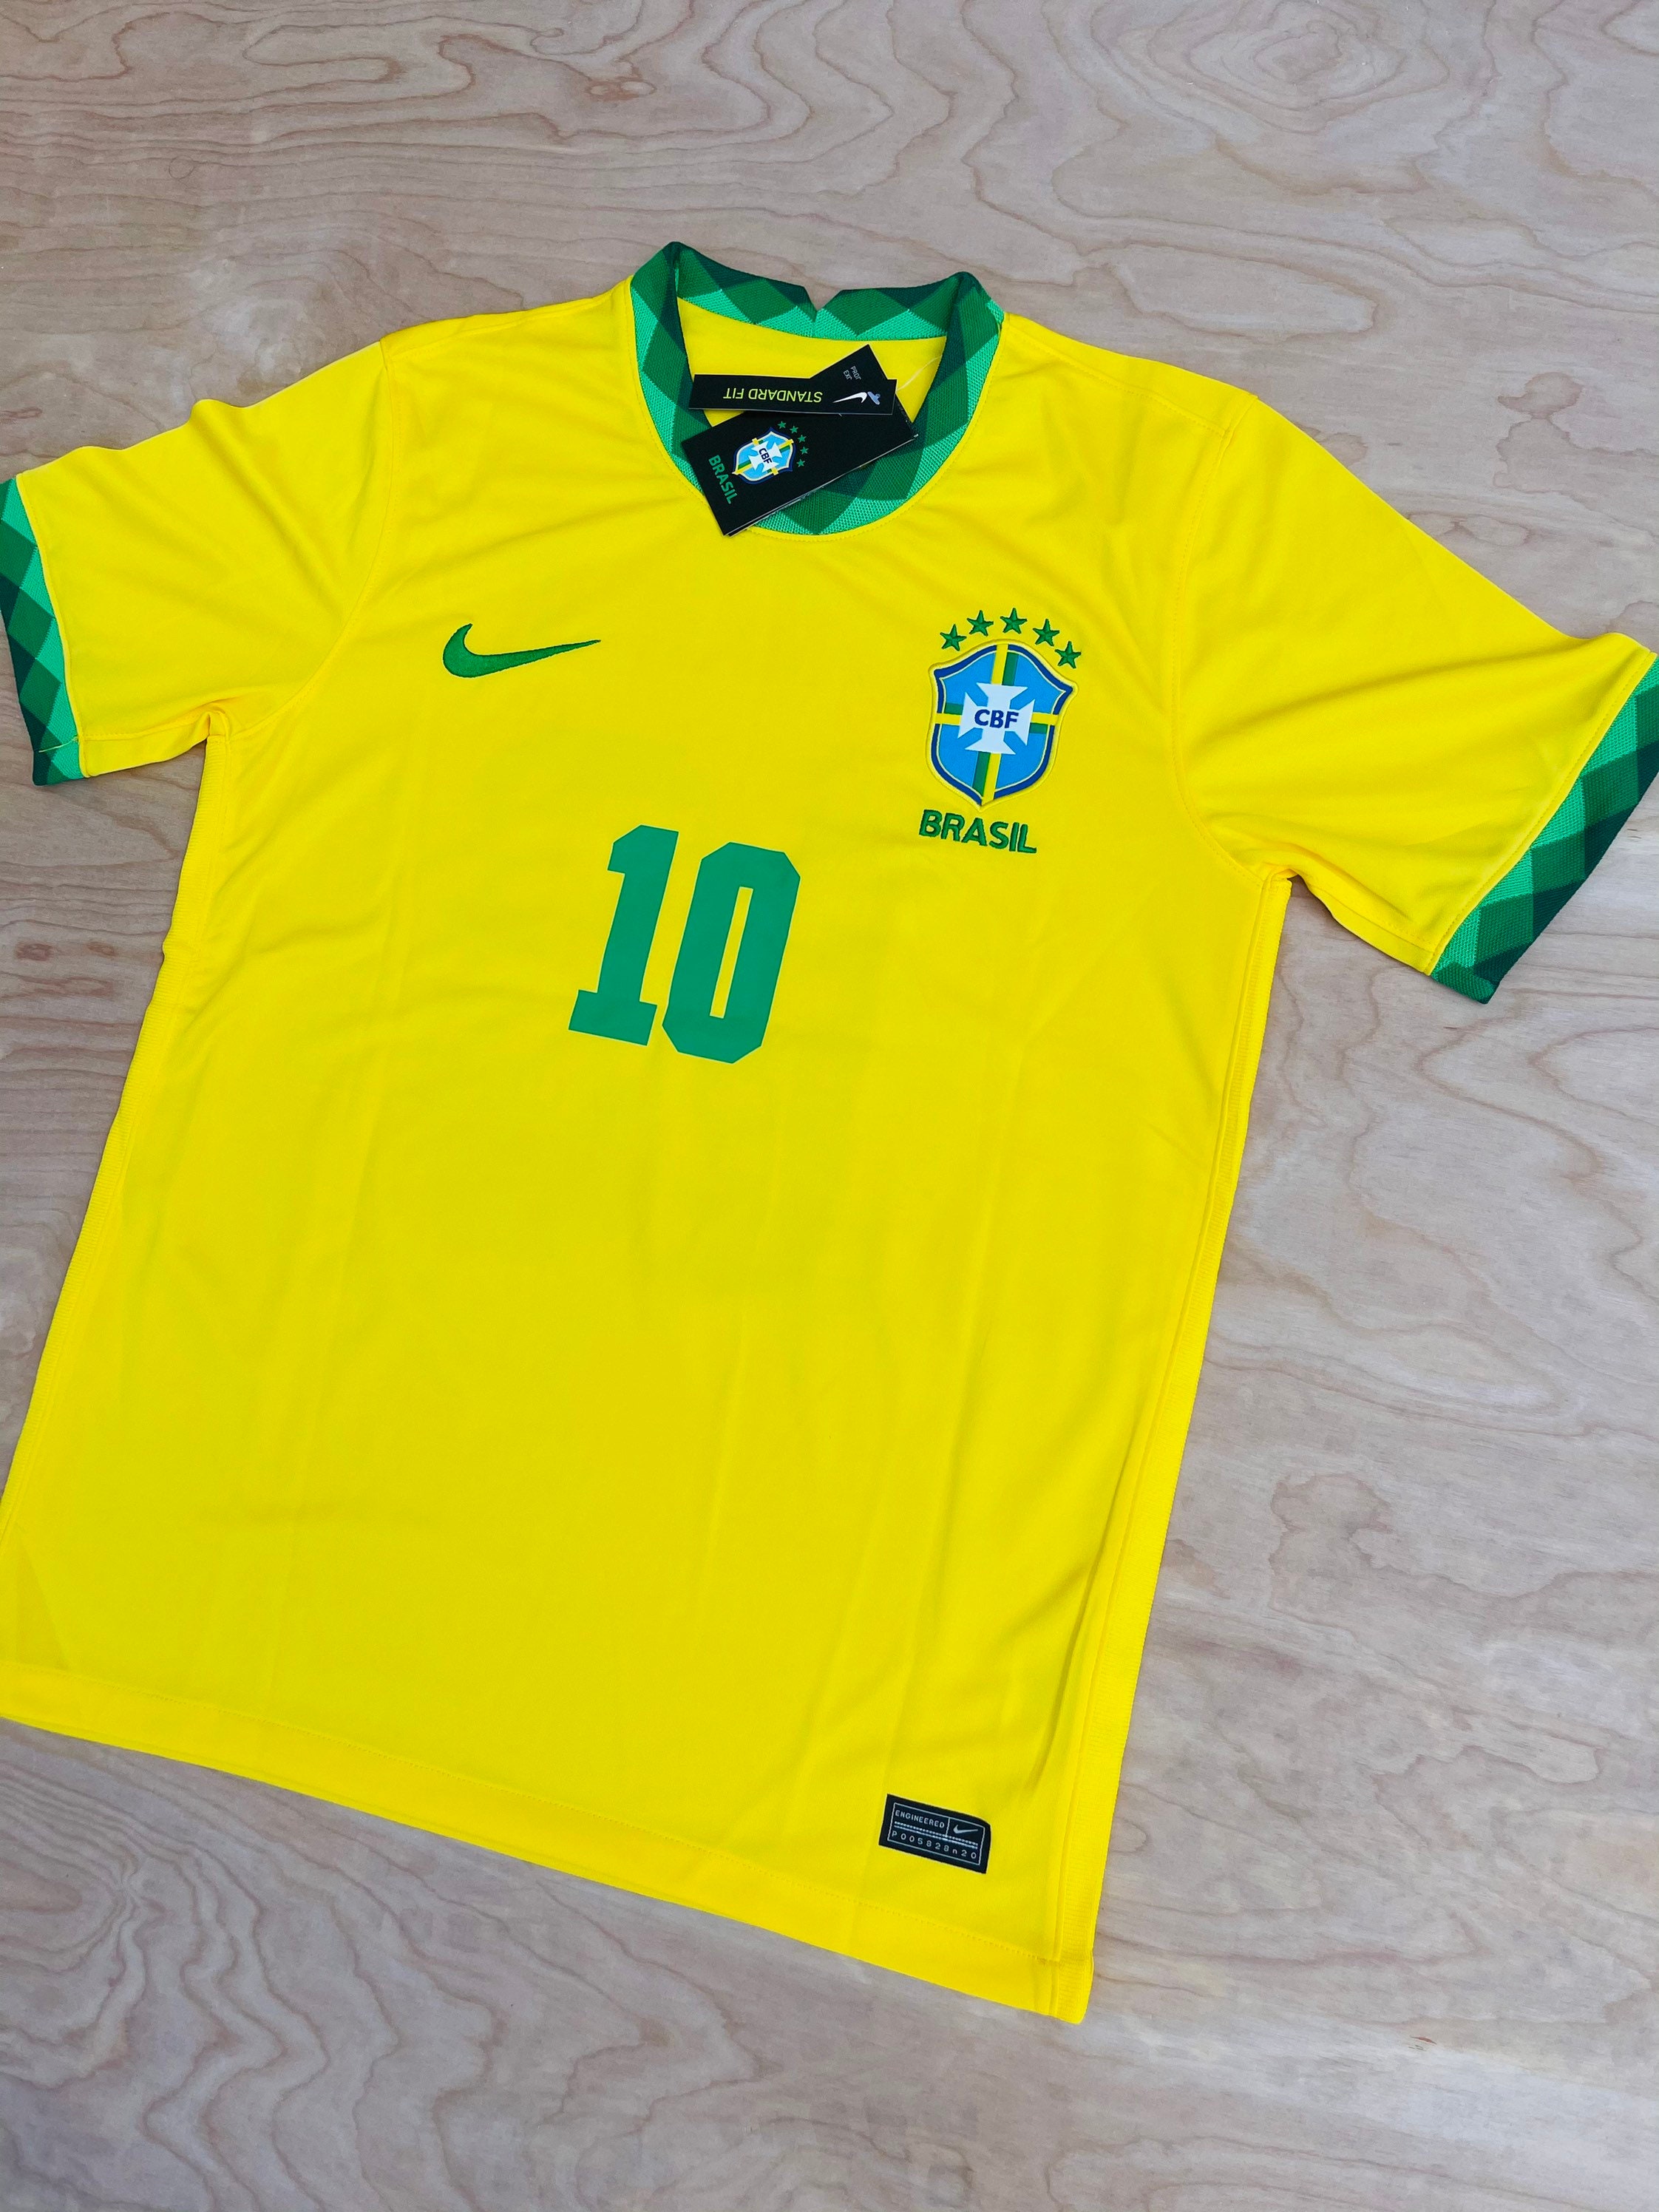 Neymar jr Brasil home soccer jersey 20/21 | Etsy